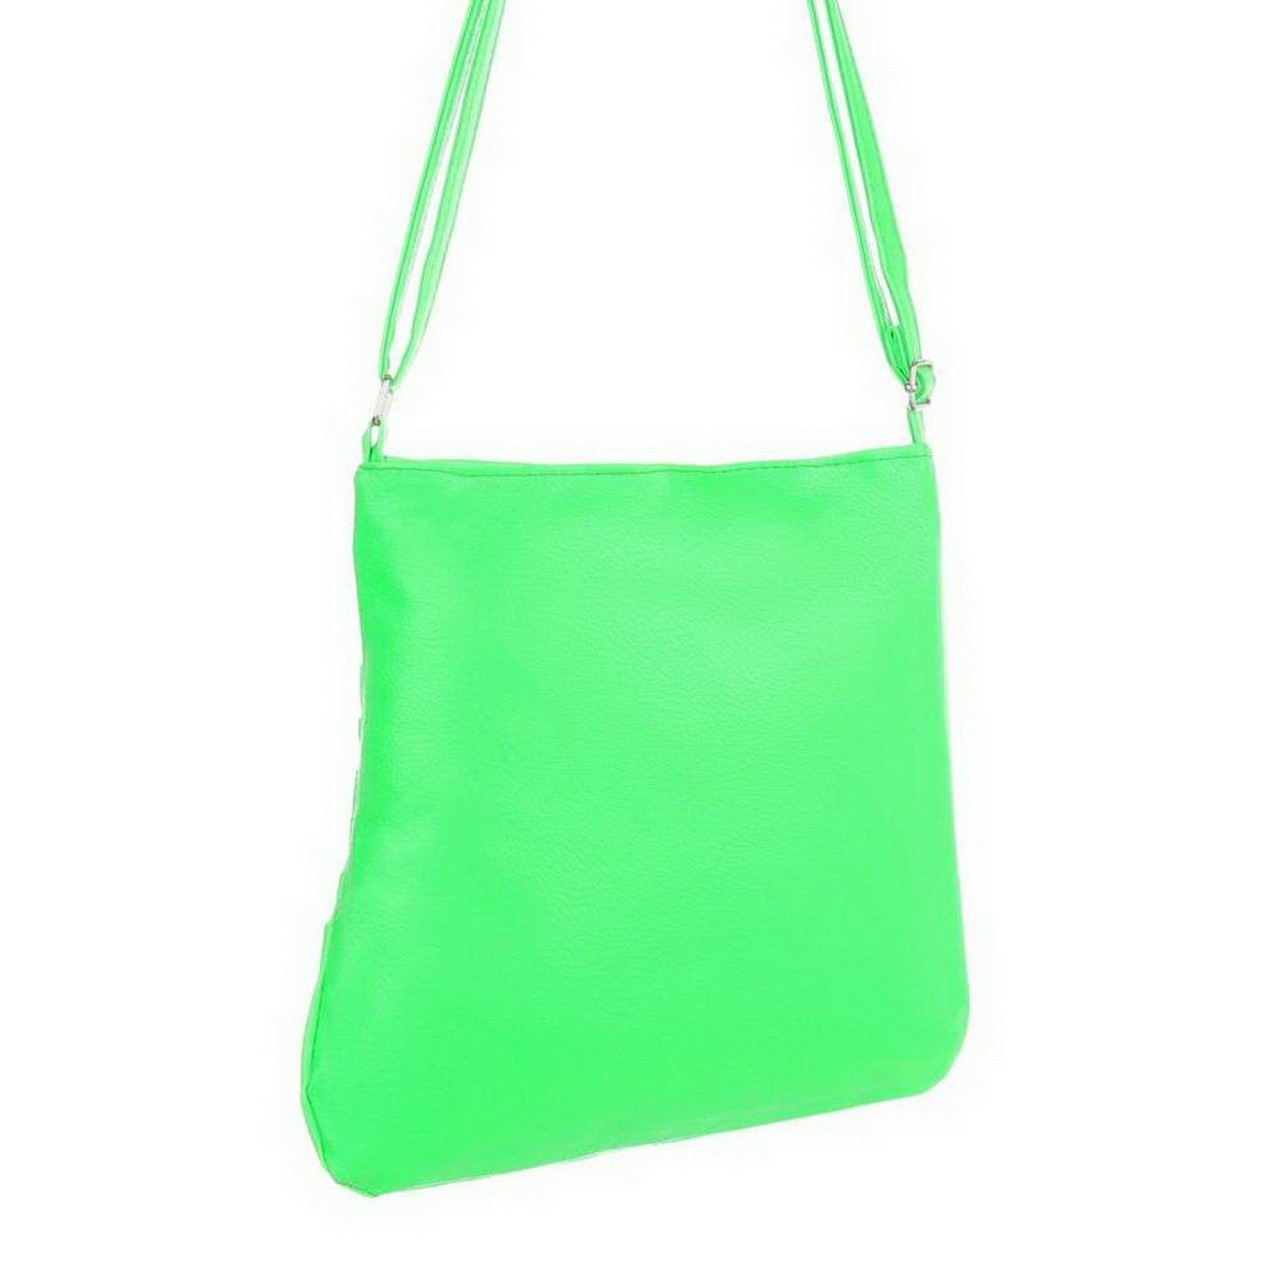 Damentasche - green